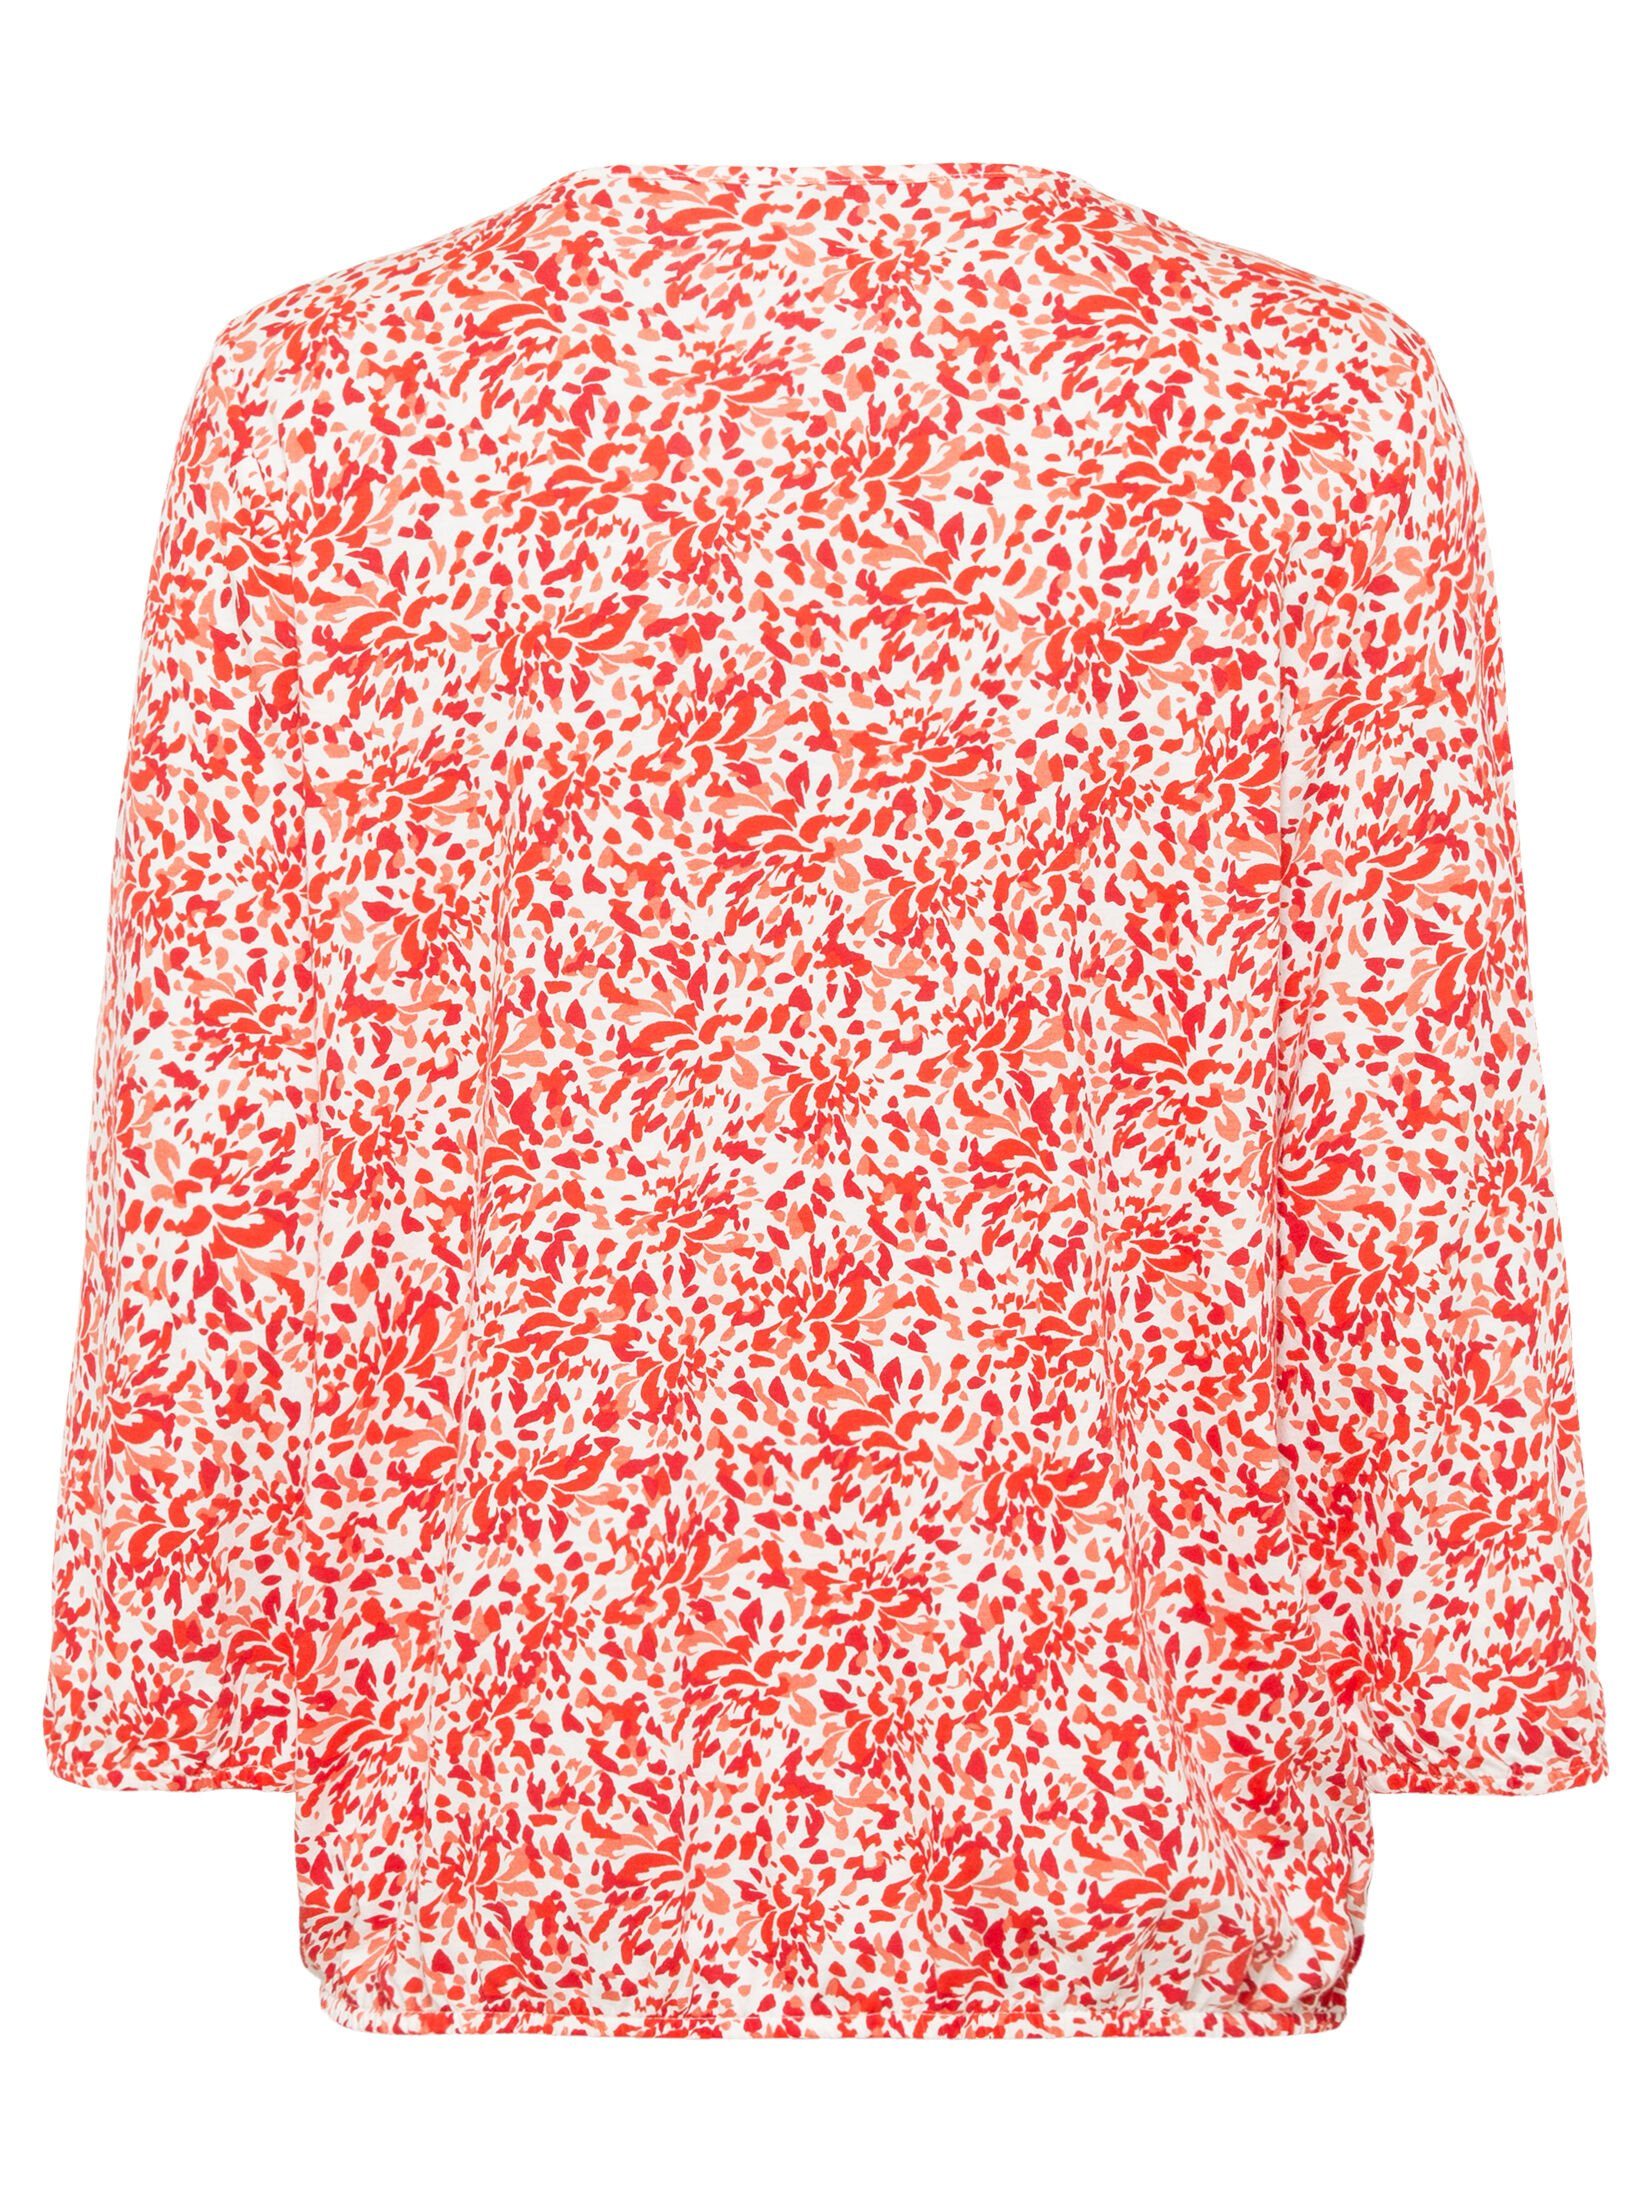 Olsen Rundhalsshirt mit Bindebändern und Allover-Blätterprint